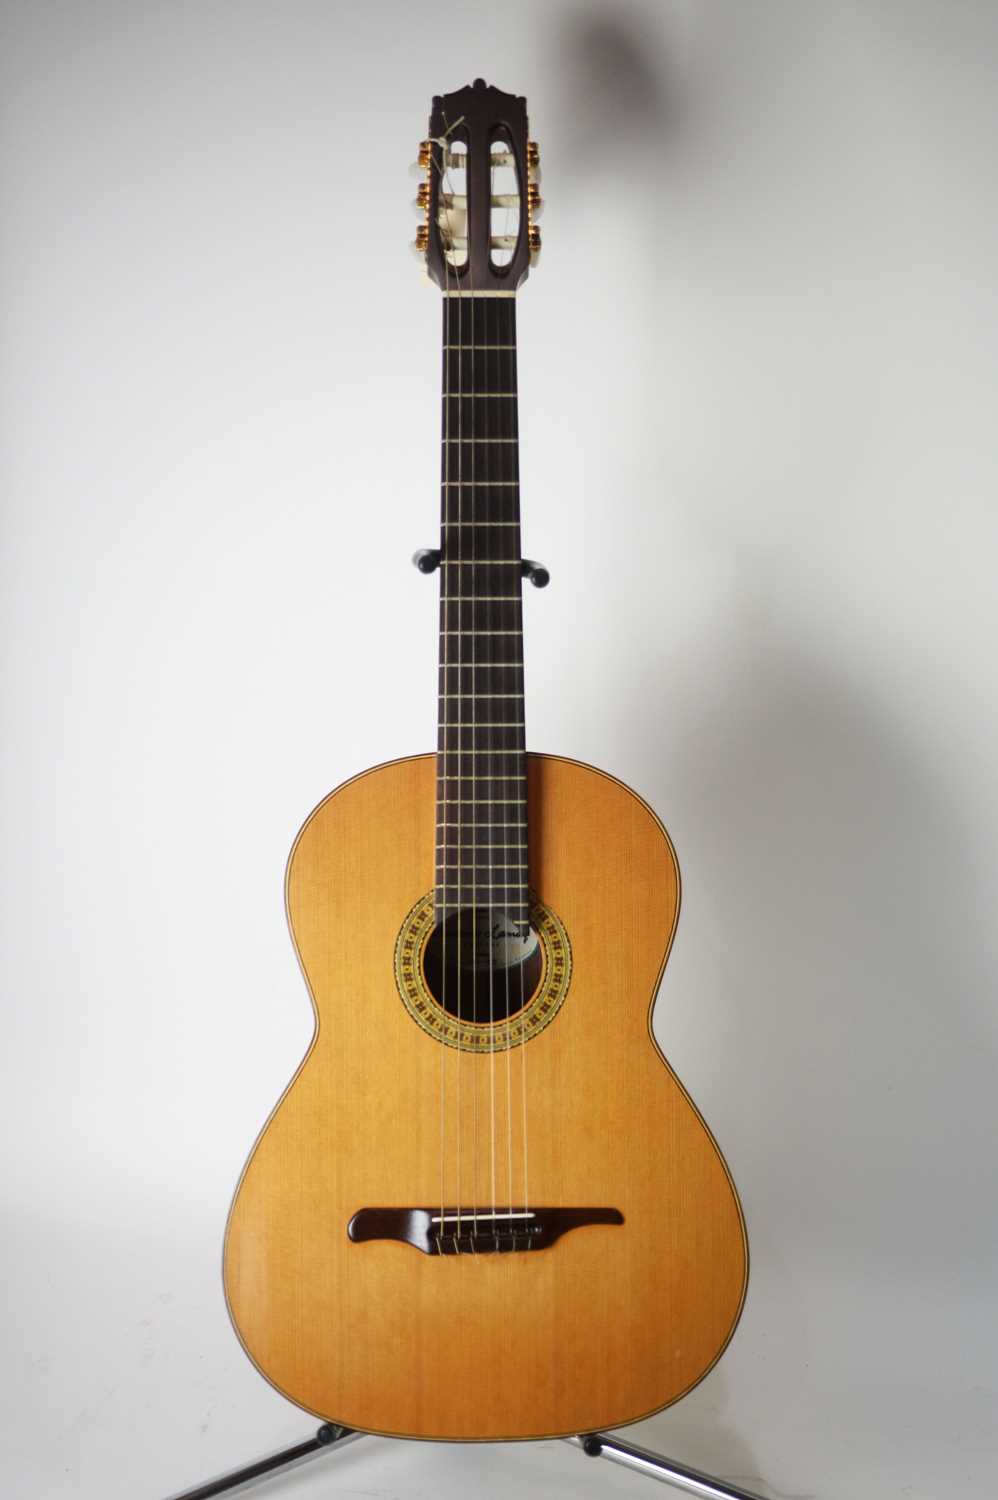 Lot 124 - Antonio Lamaq SD P2 classical guitar cased